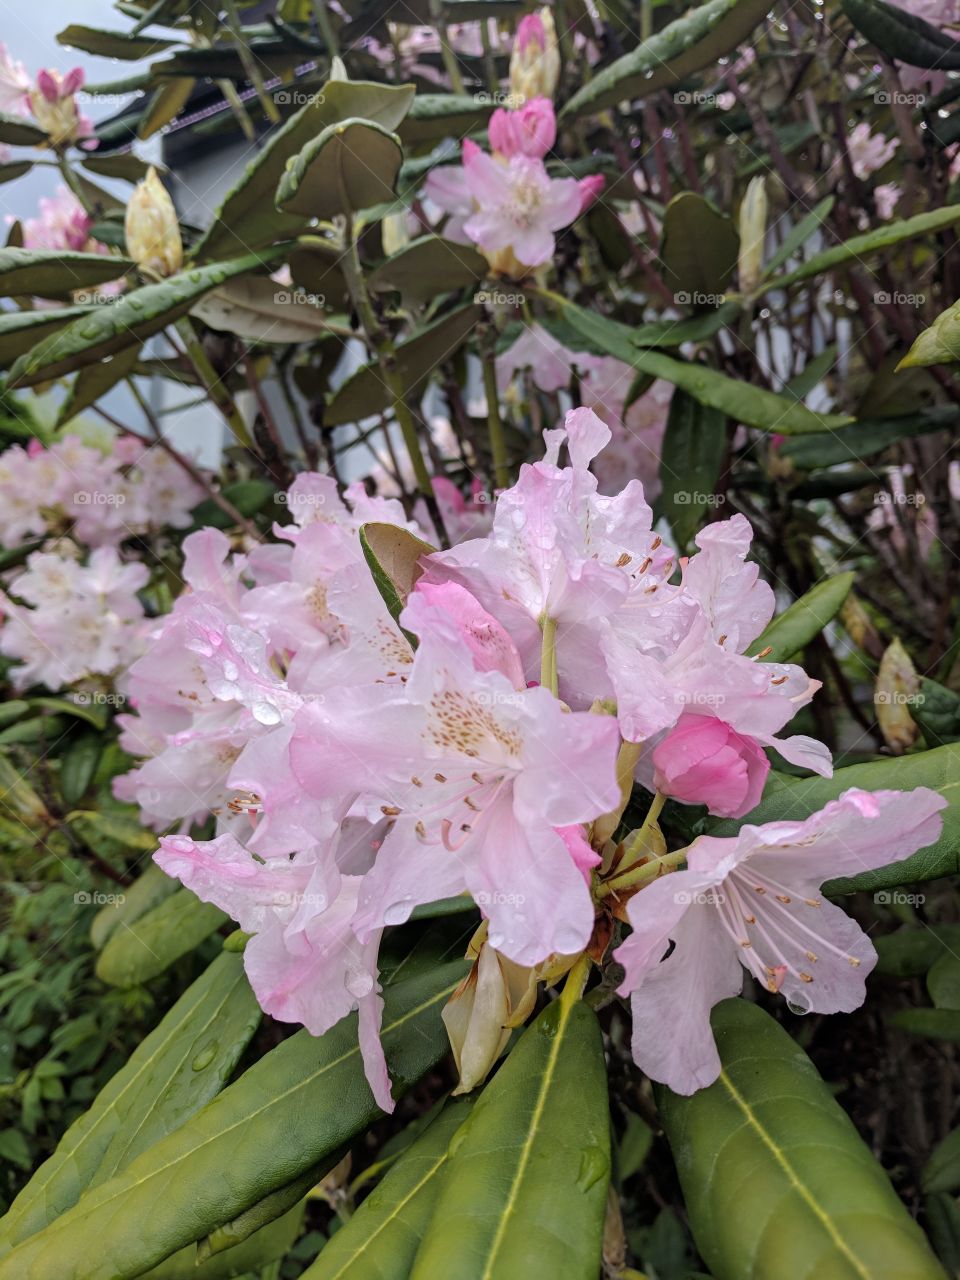 Richmond in bloom